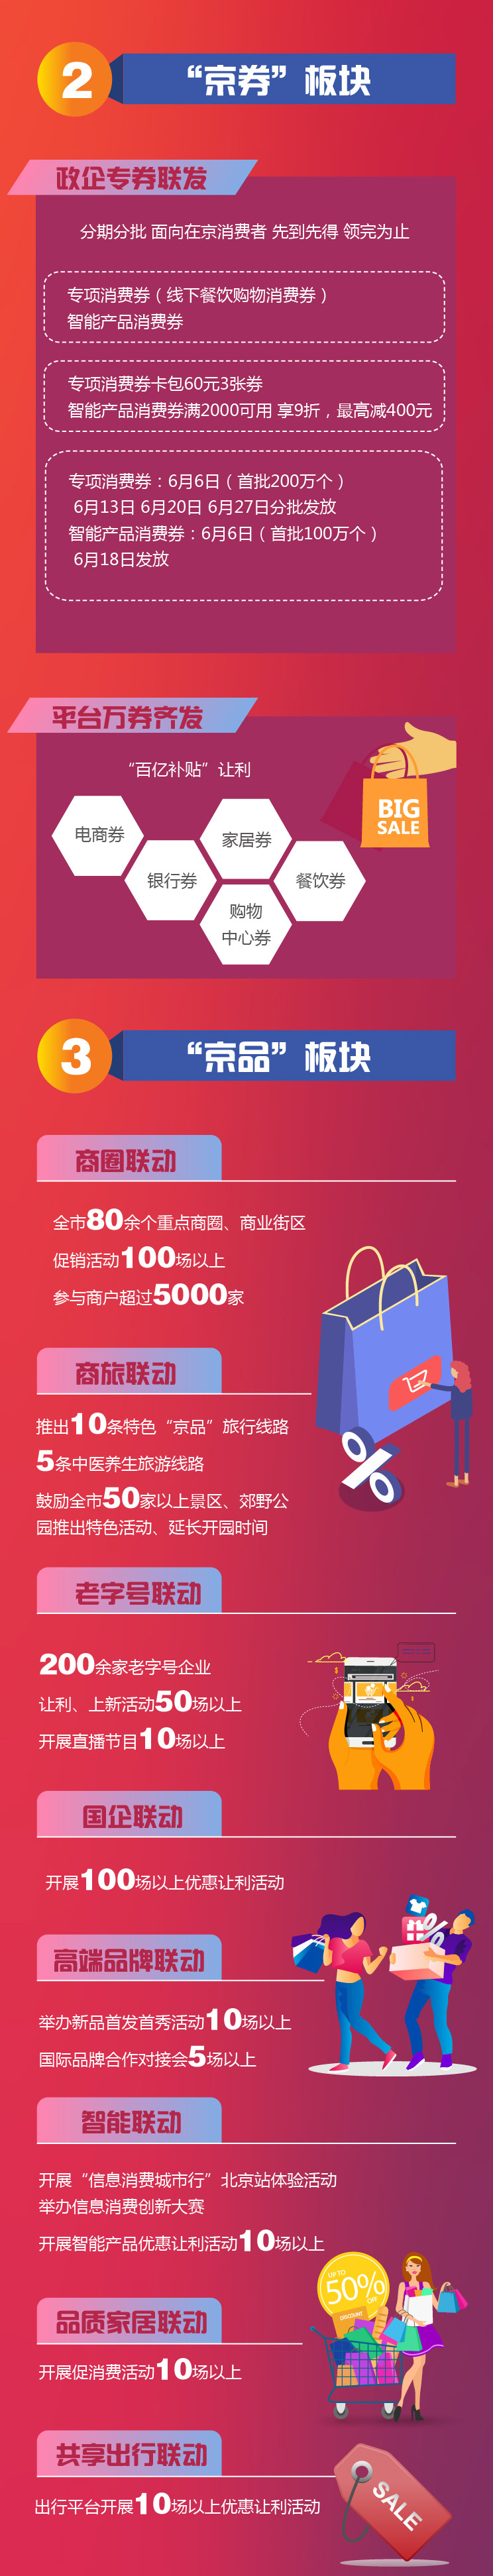 北京消费季一图全读懂